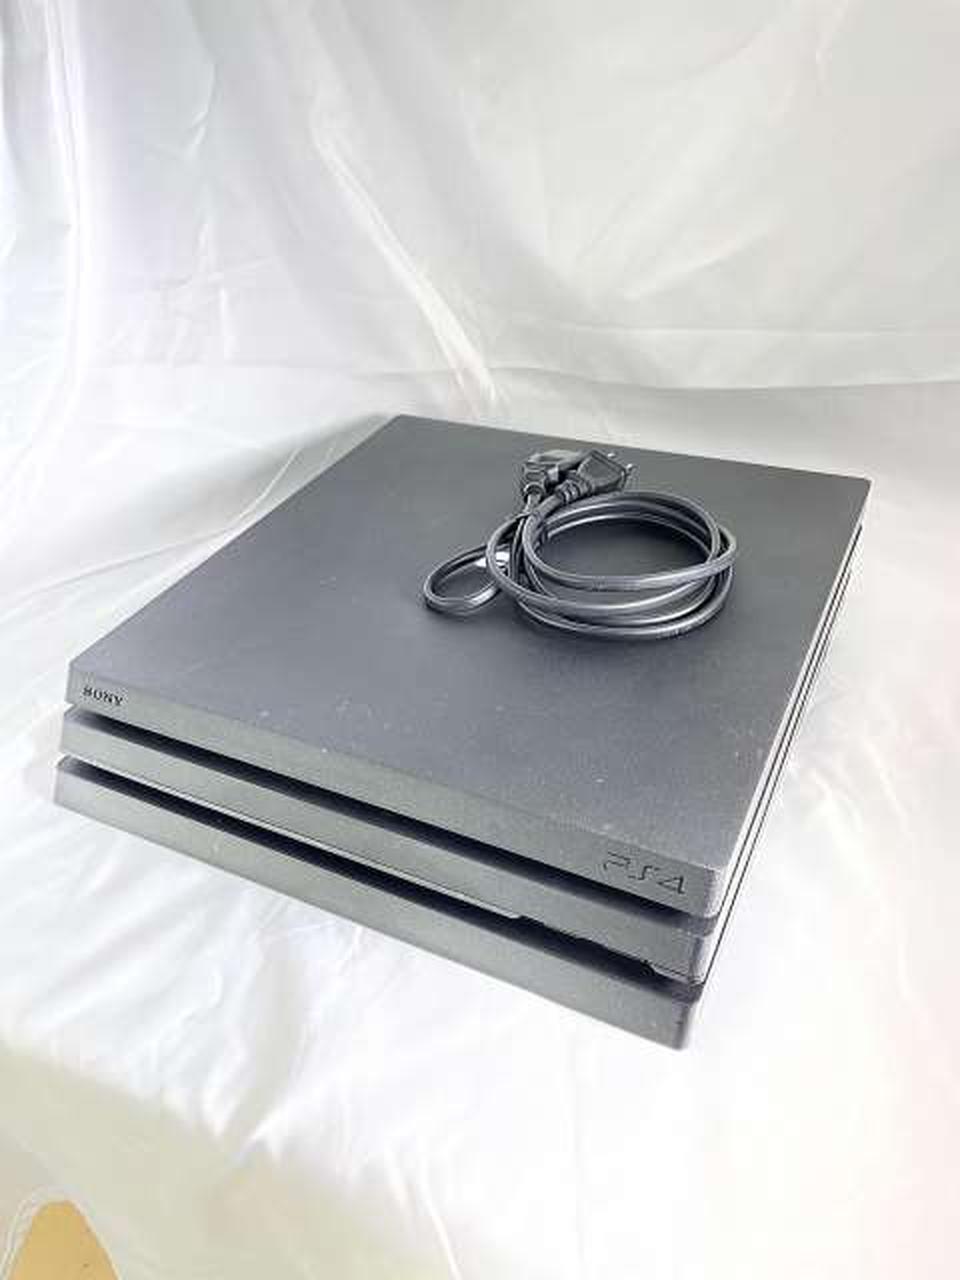 Sony Cuh-7100B Playstation 4 Console 0515-4